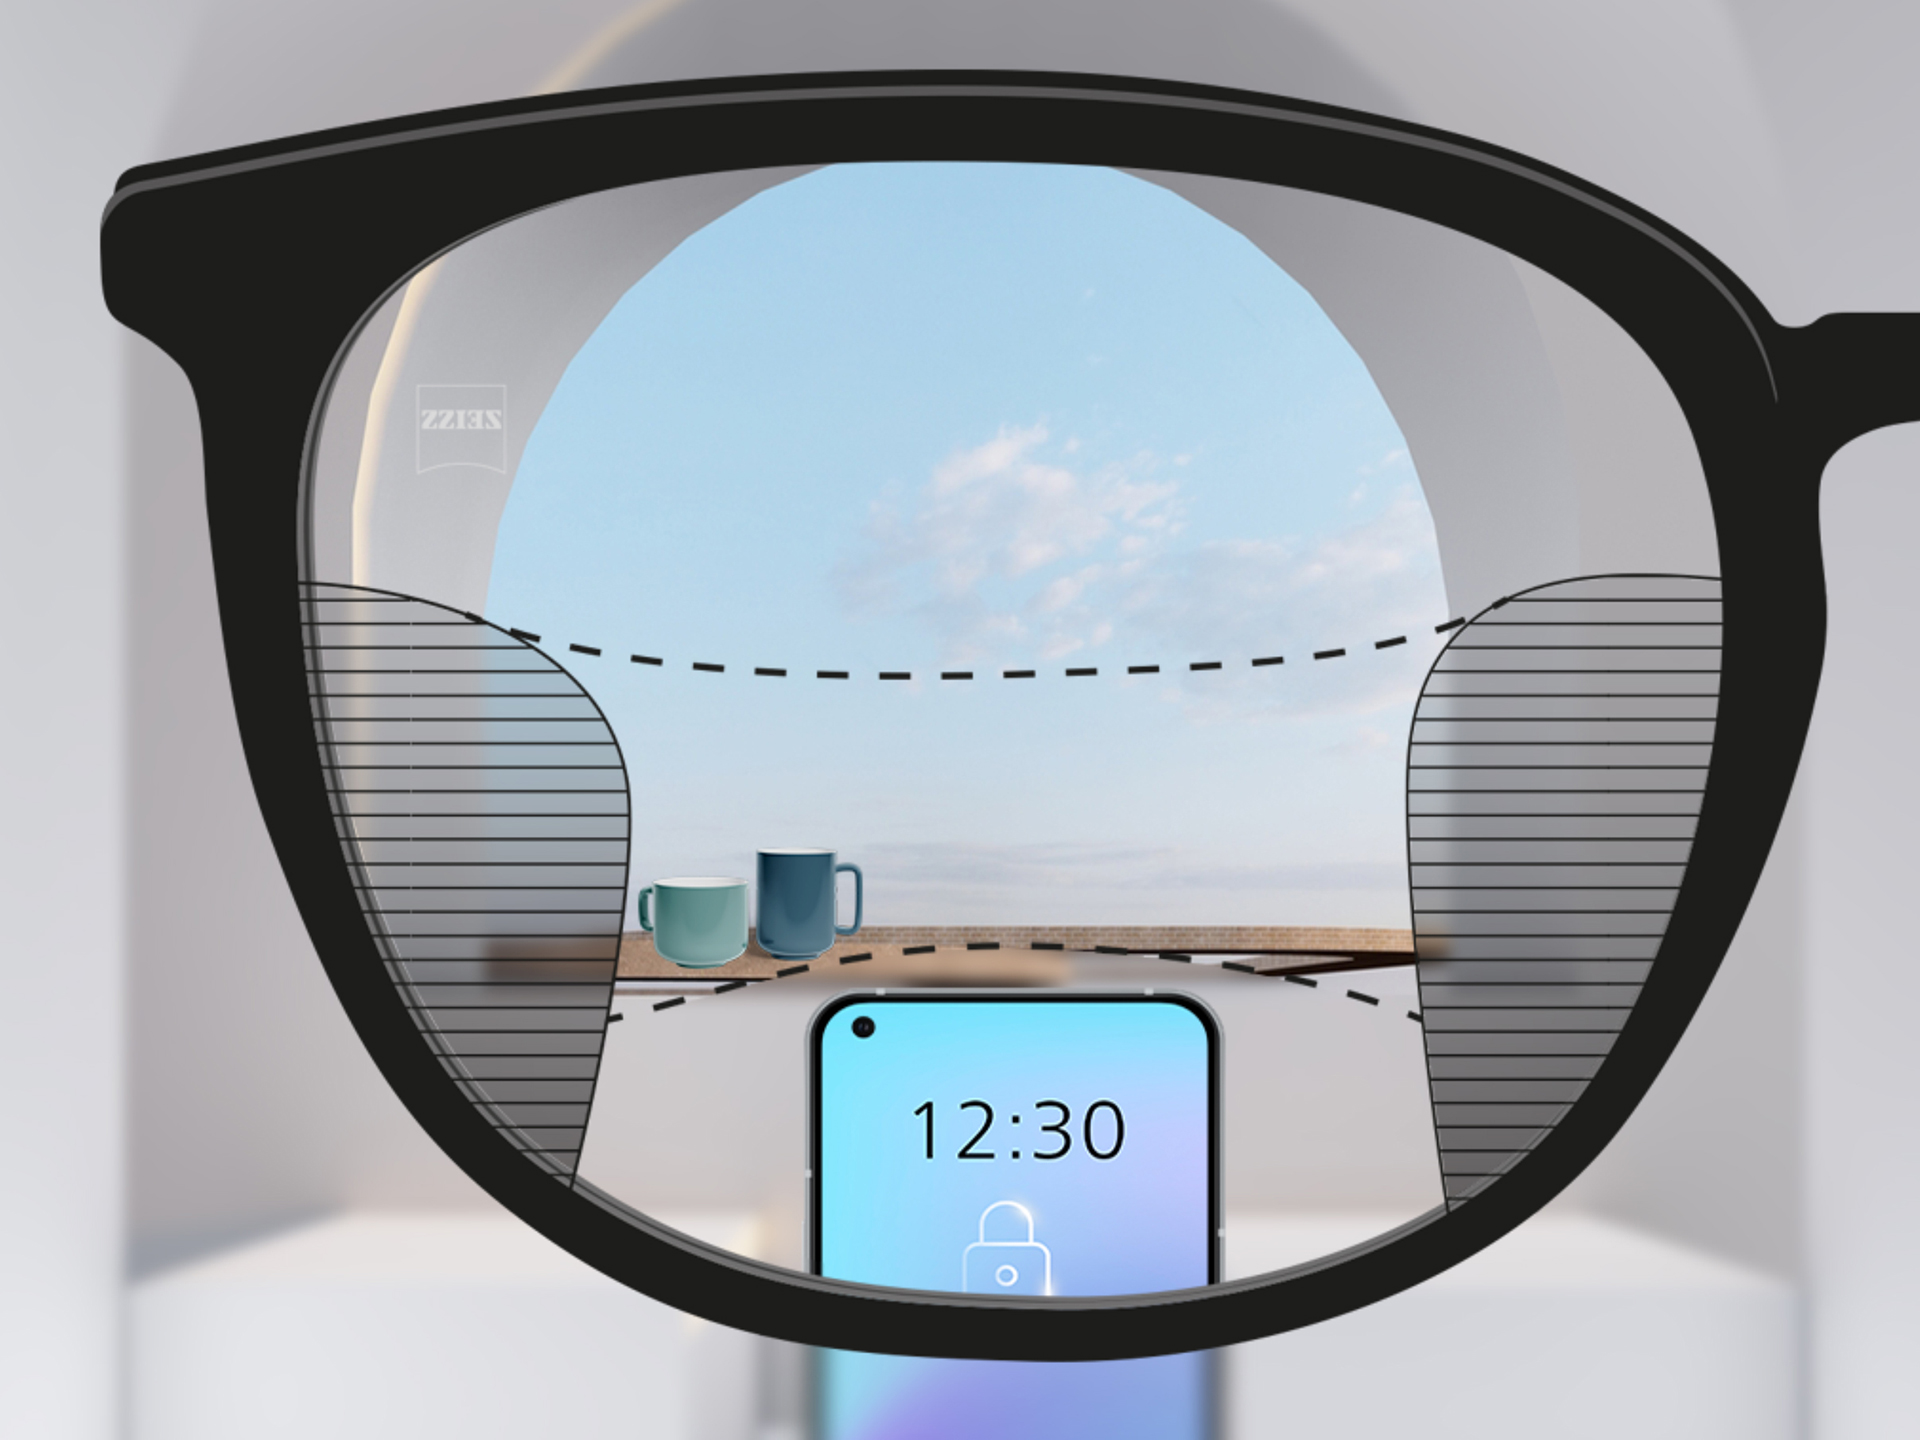 ZEISS SmartLife累進レンズを通した視点のイメージ：左右のぼやけた範囲は狭く、明瞭な視野ゾーンが広くなります。